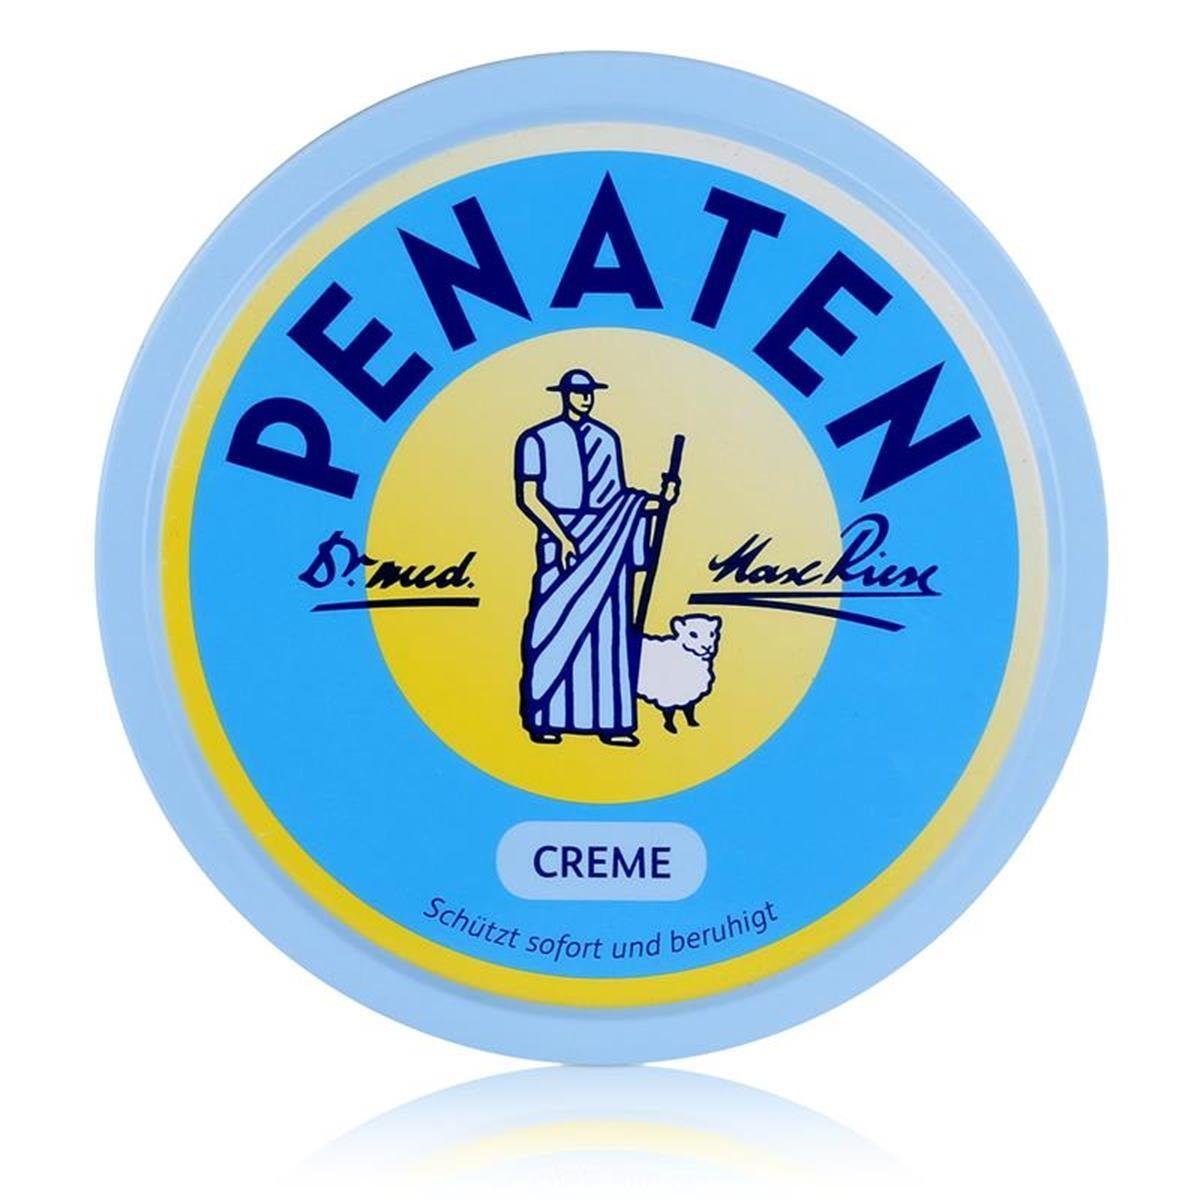 Creme dem Penaten und beruhigt PENATEN Schützt Penaten ml 150 2x sofort Babypflege-Set mit -